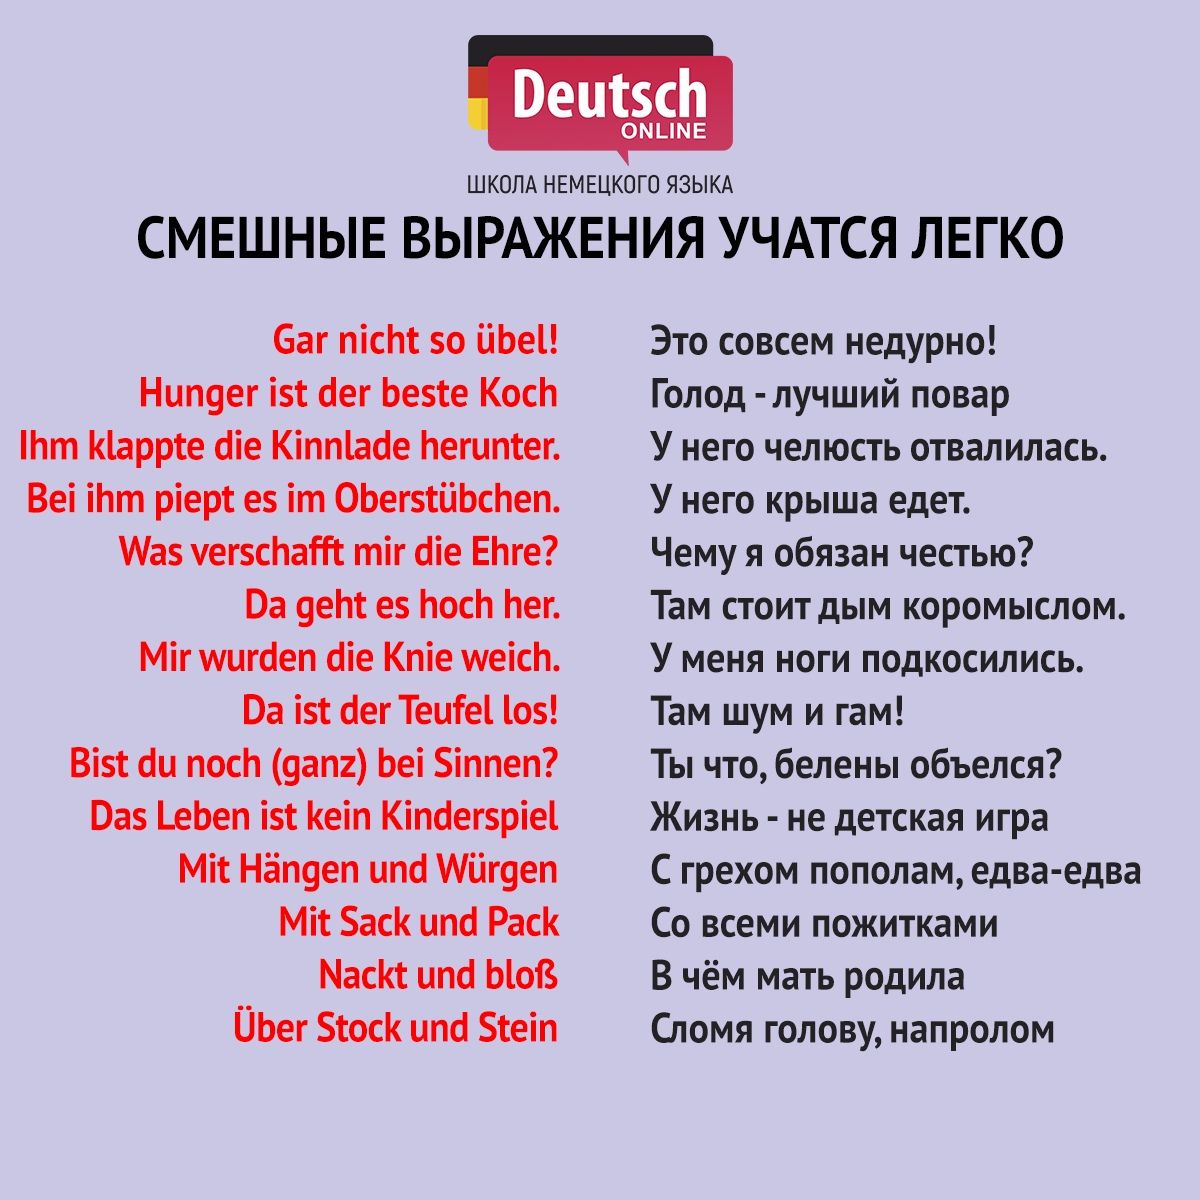 Фото перевод на русский язык с немецкого языка